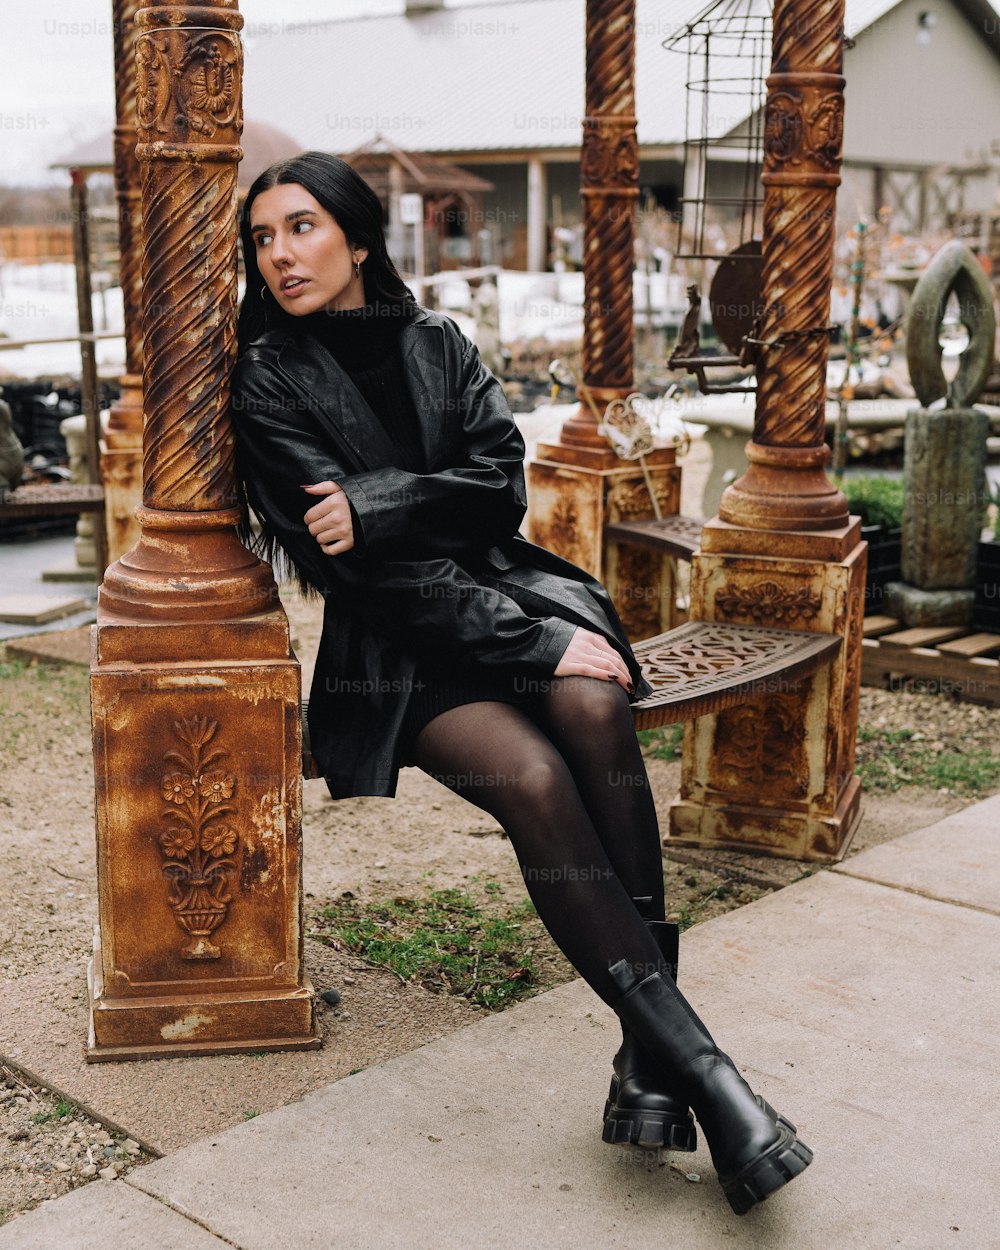 Eine Frau, die in einem schwarzen Kleid auf einer Bank sitzt